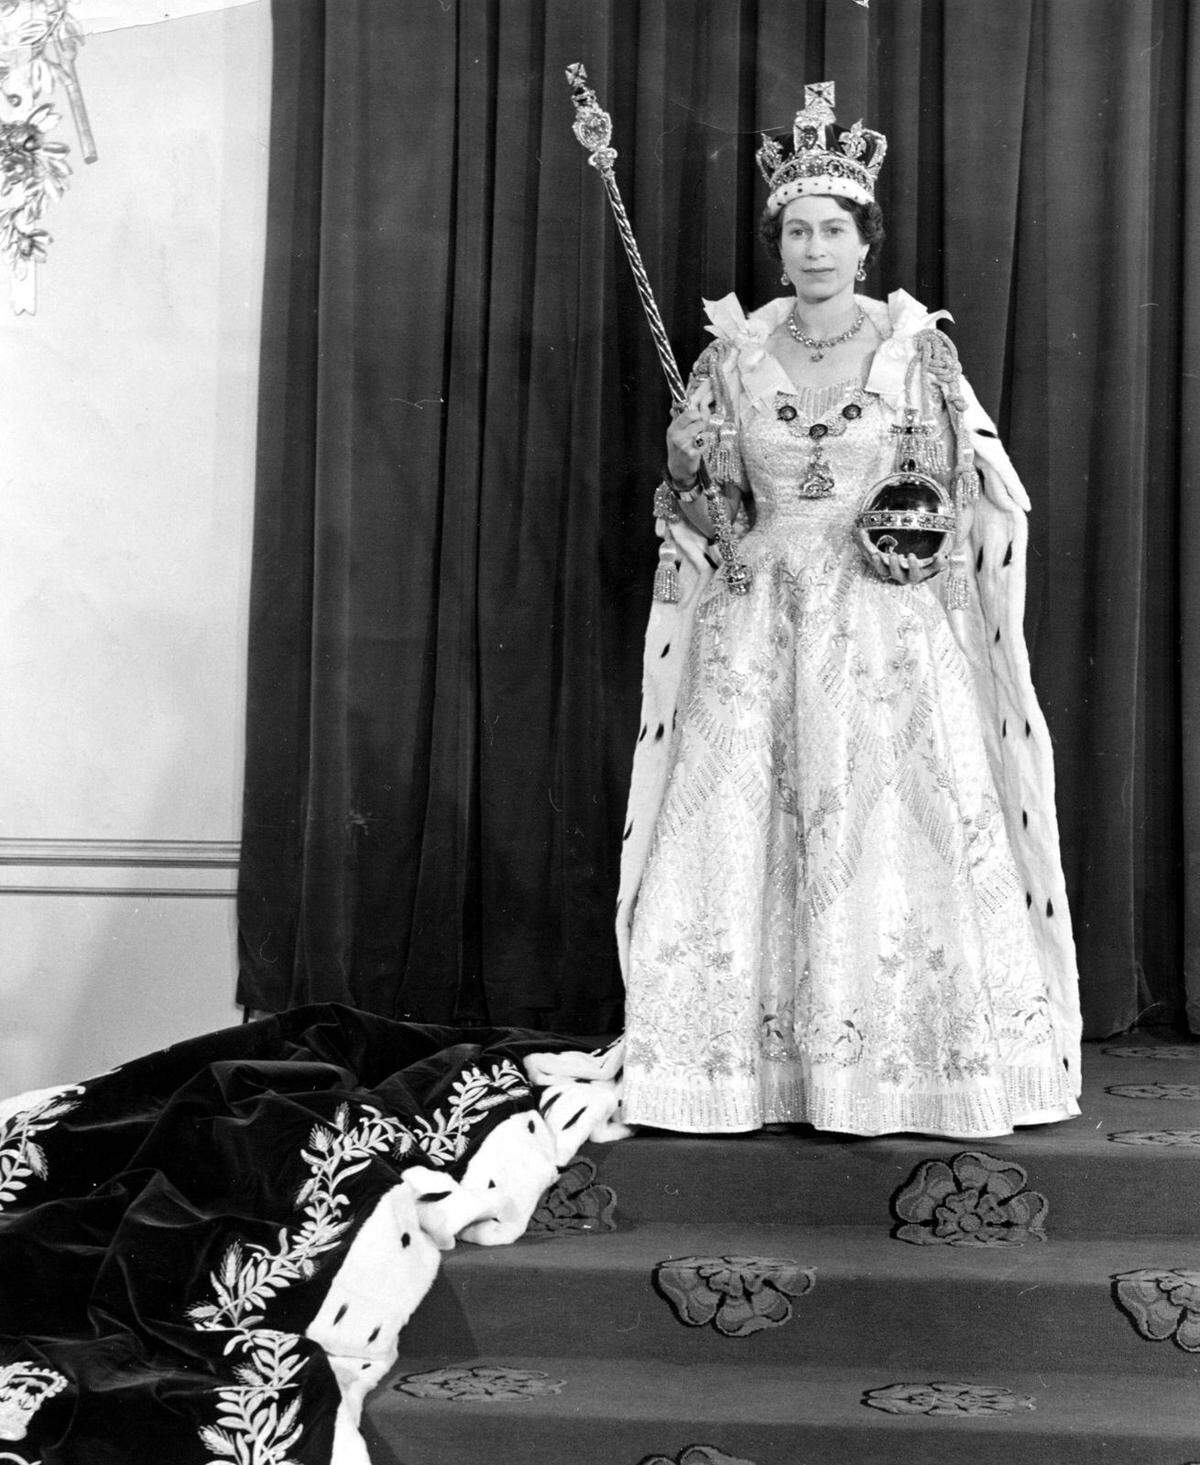 Als sie 1952 Königin wurde, stand Elizabeth an der Spitze eines Empires mit mehr als 70 Kolonien - inzwischen ist davon kaum etwas übrig. Sie übernahm das Zepter im Kalten Krieg, der Jahrzehnte andauern sollte und schon lange wieder Geschichte ist. Sie saß auf dem Thron, als ihr Land Teil der EU wurde - und als Großbritannien wieder austrat.